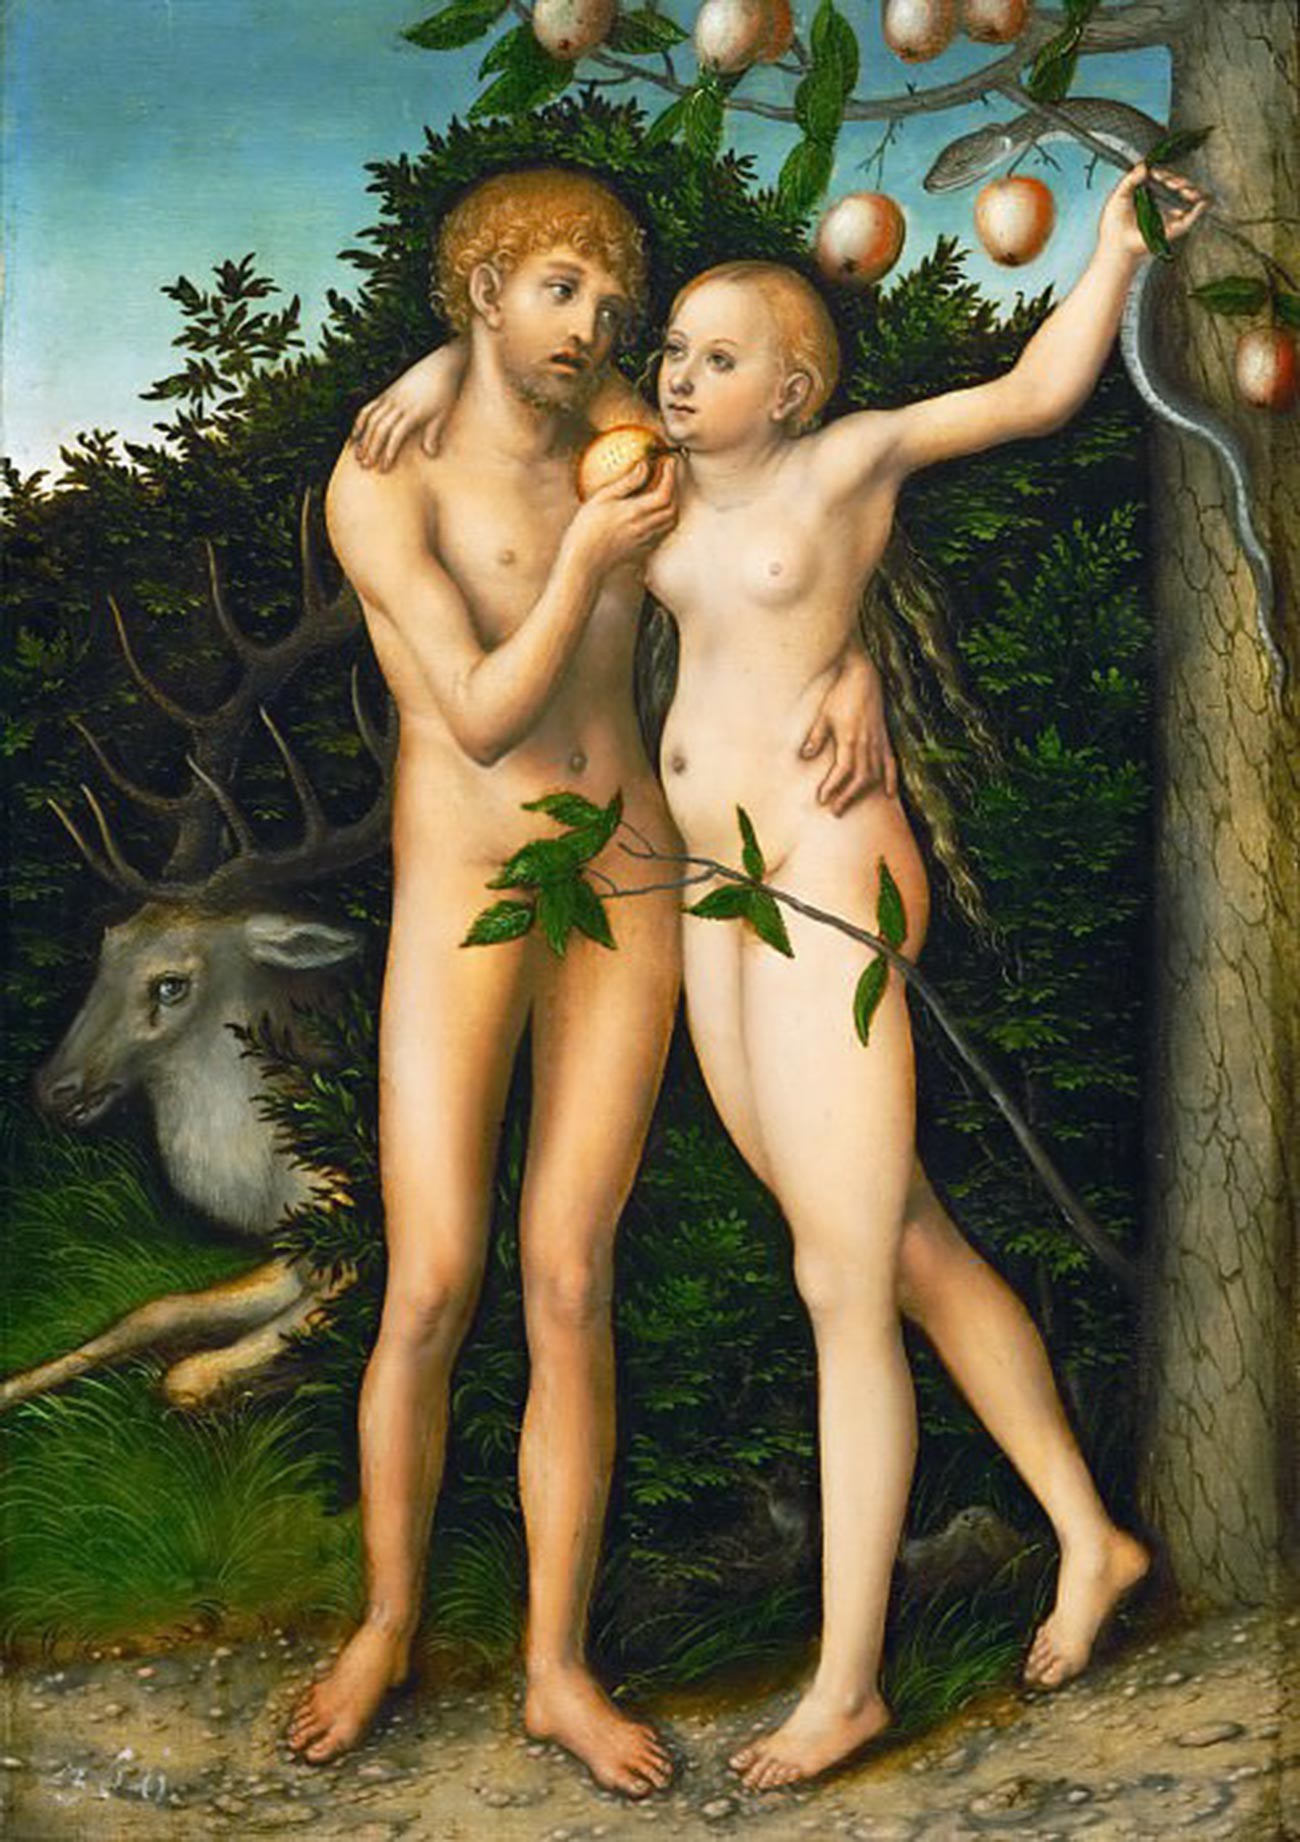 Adam et Ève au Paradis (La Chute), 1537
